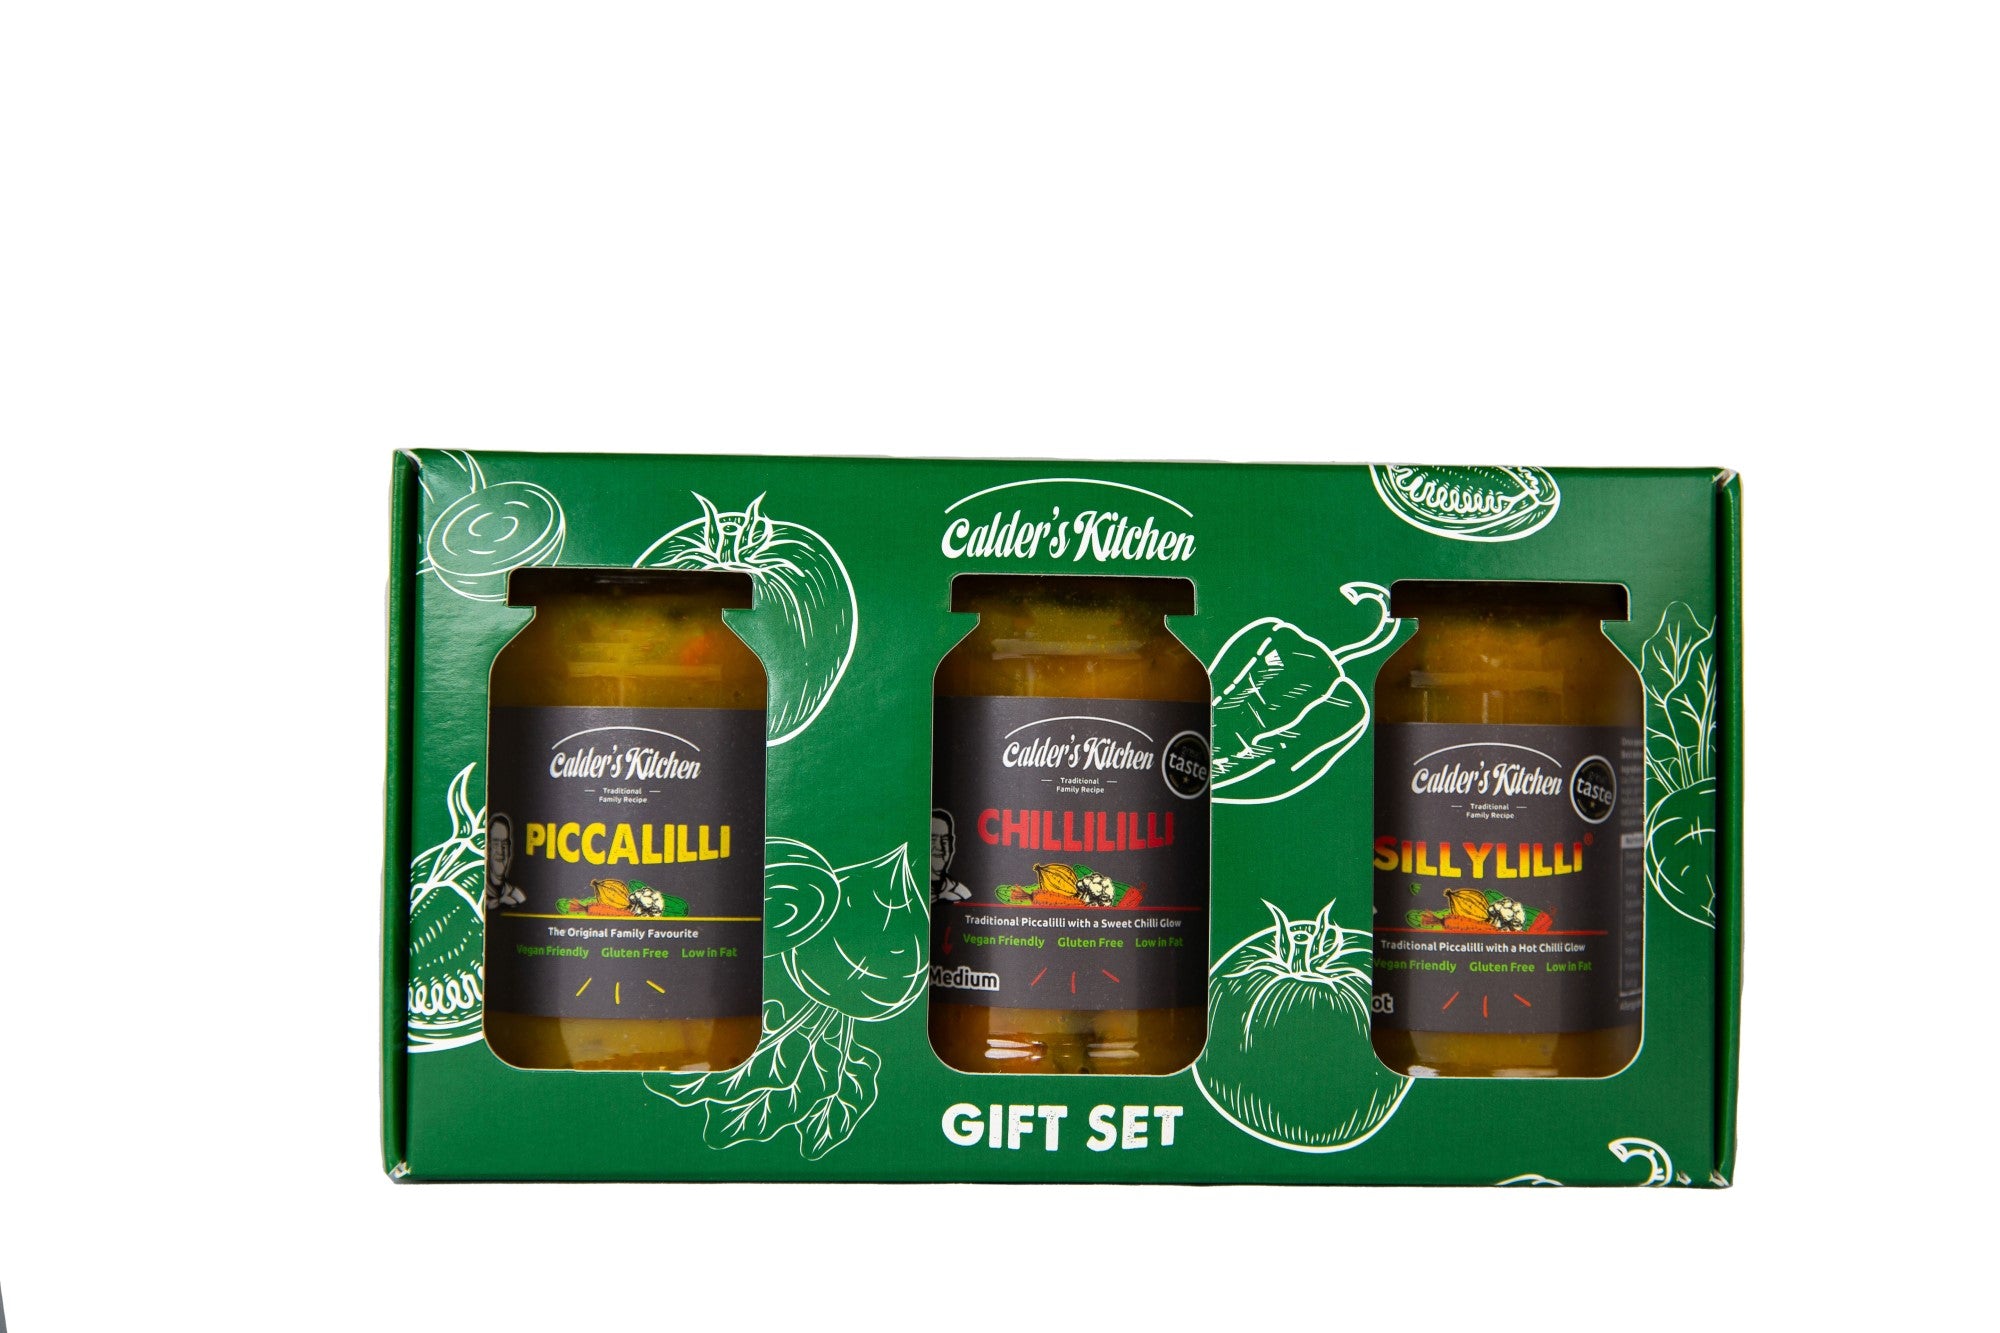 Piccalilli / Chillililli / Sillylilli Gift Set - 3 x 285g jars (Free UK Shipping)